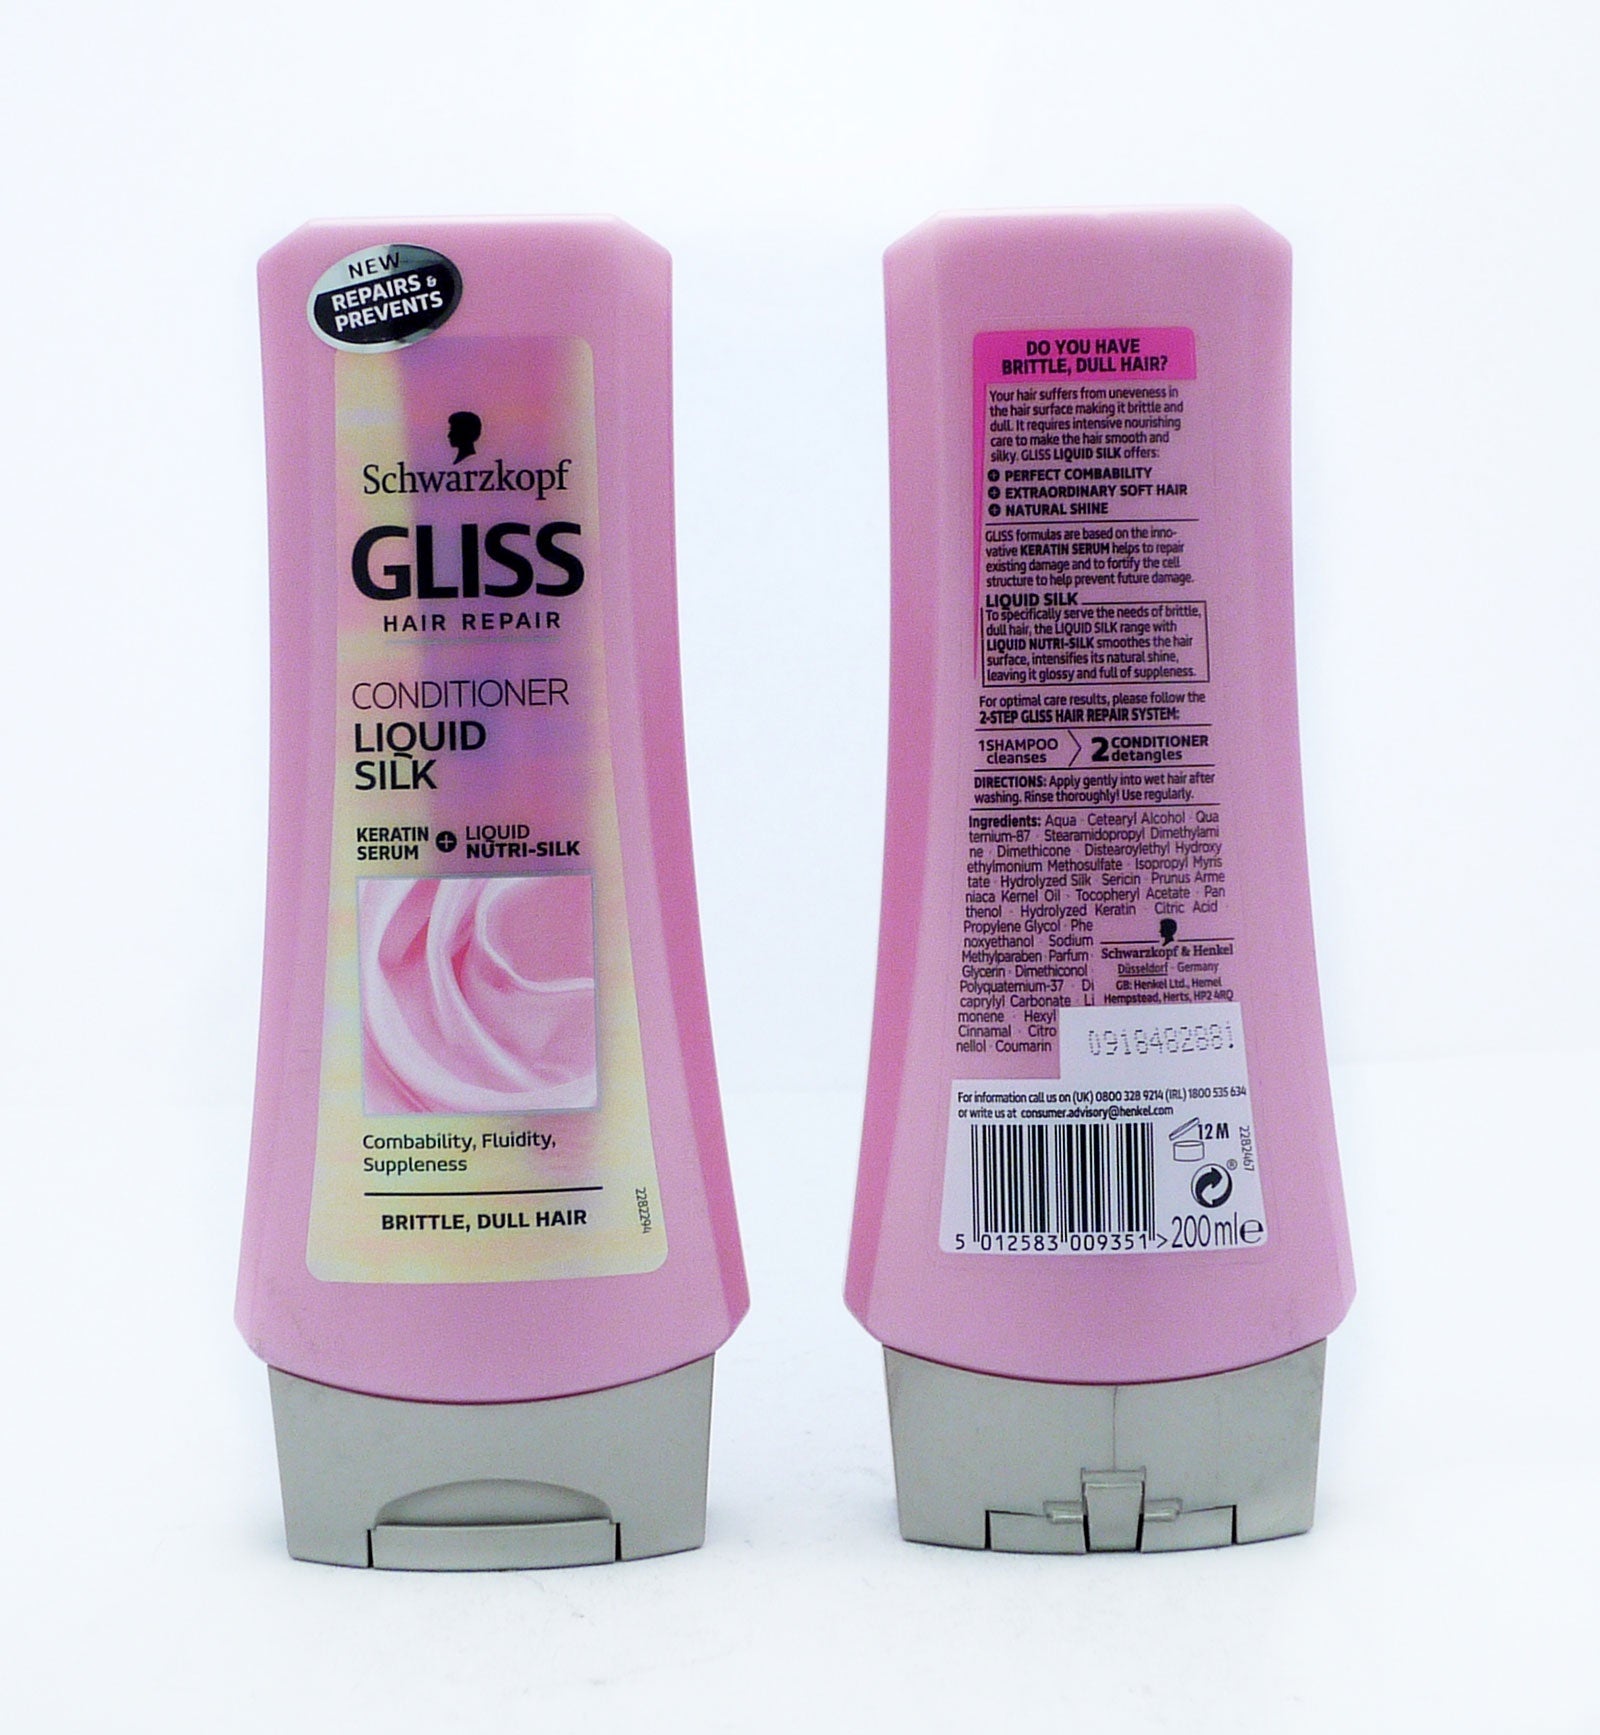 Gliss Conditioner Liquid Silk 200ml*